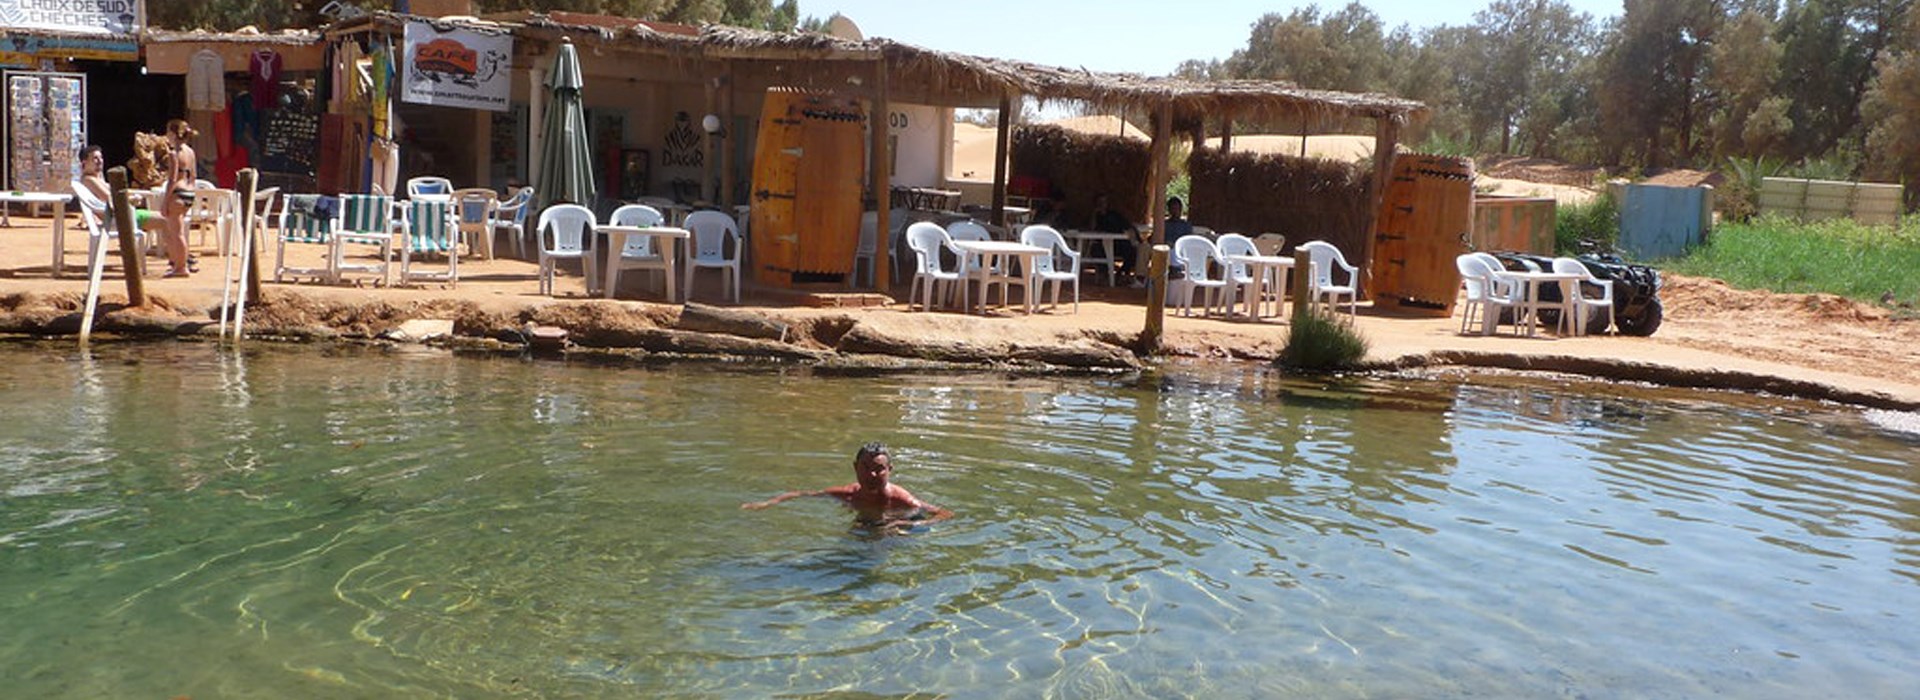 Visiter L'Oasis de Ksar-Ghilane - Tunisie